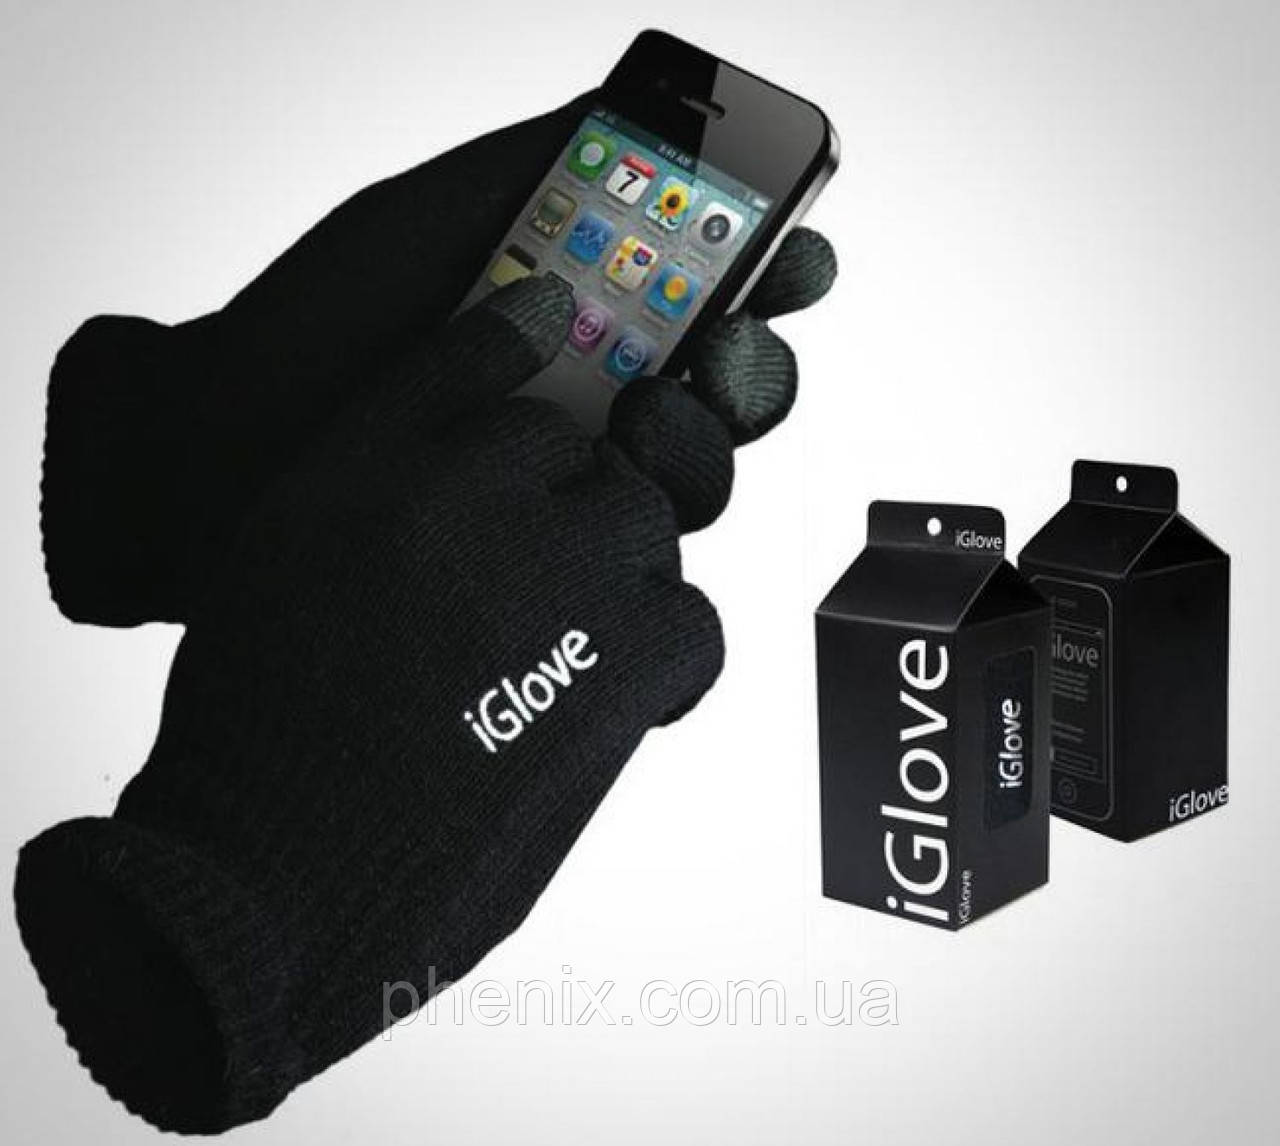 Оригінальні рукавички для сенсорних екранів iGlove у фірмовій упаковці